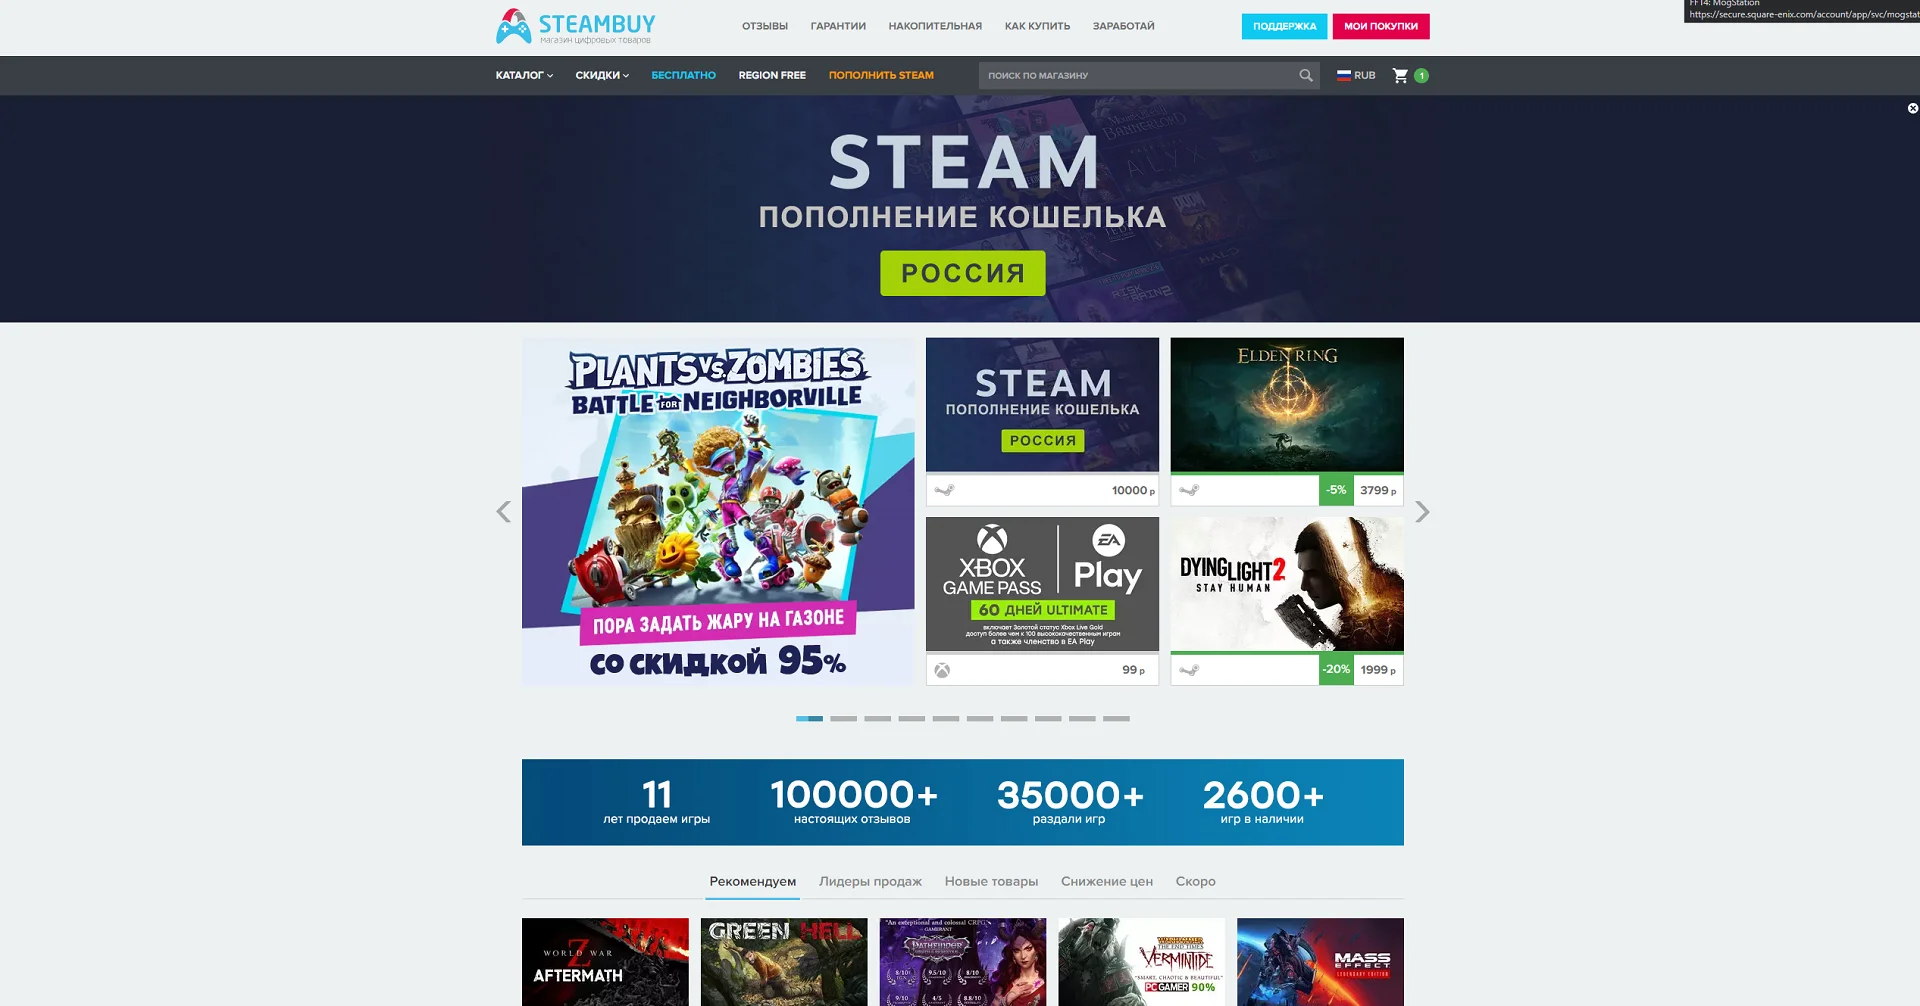 SteamBuy пообещал сделать всё возможное для сохранения низких цен на игры в России - фото 1